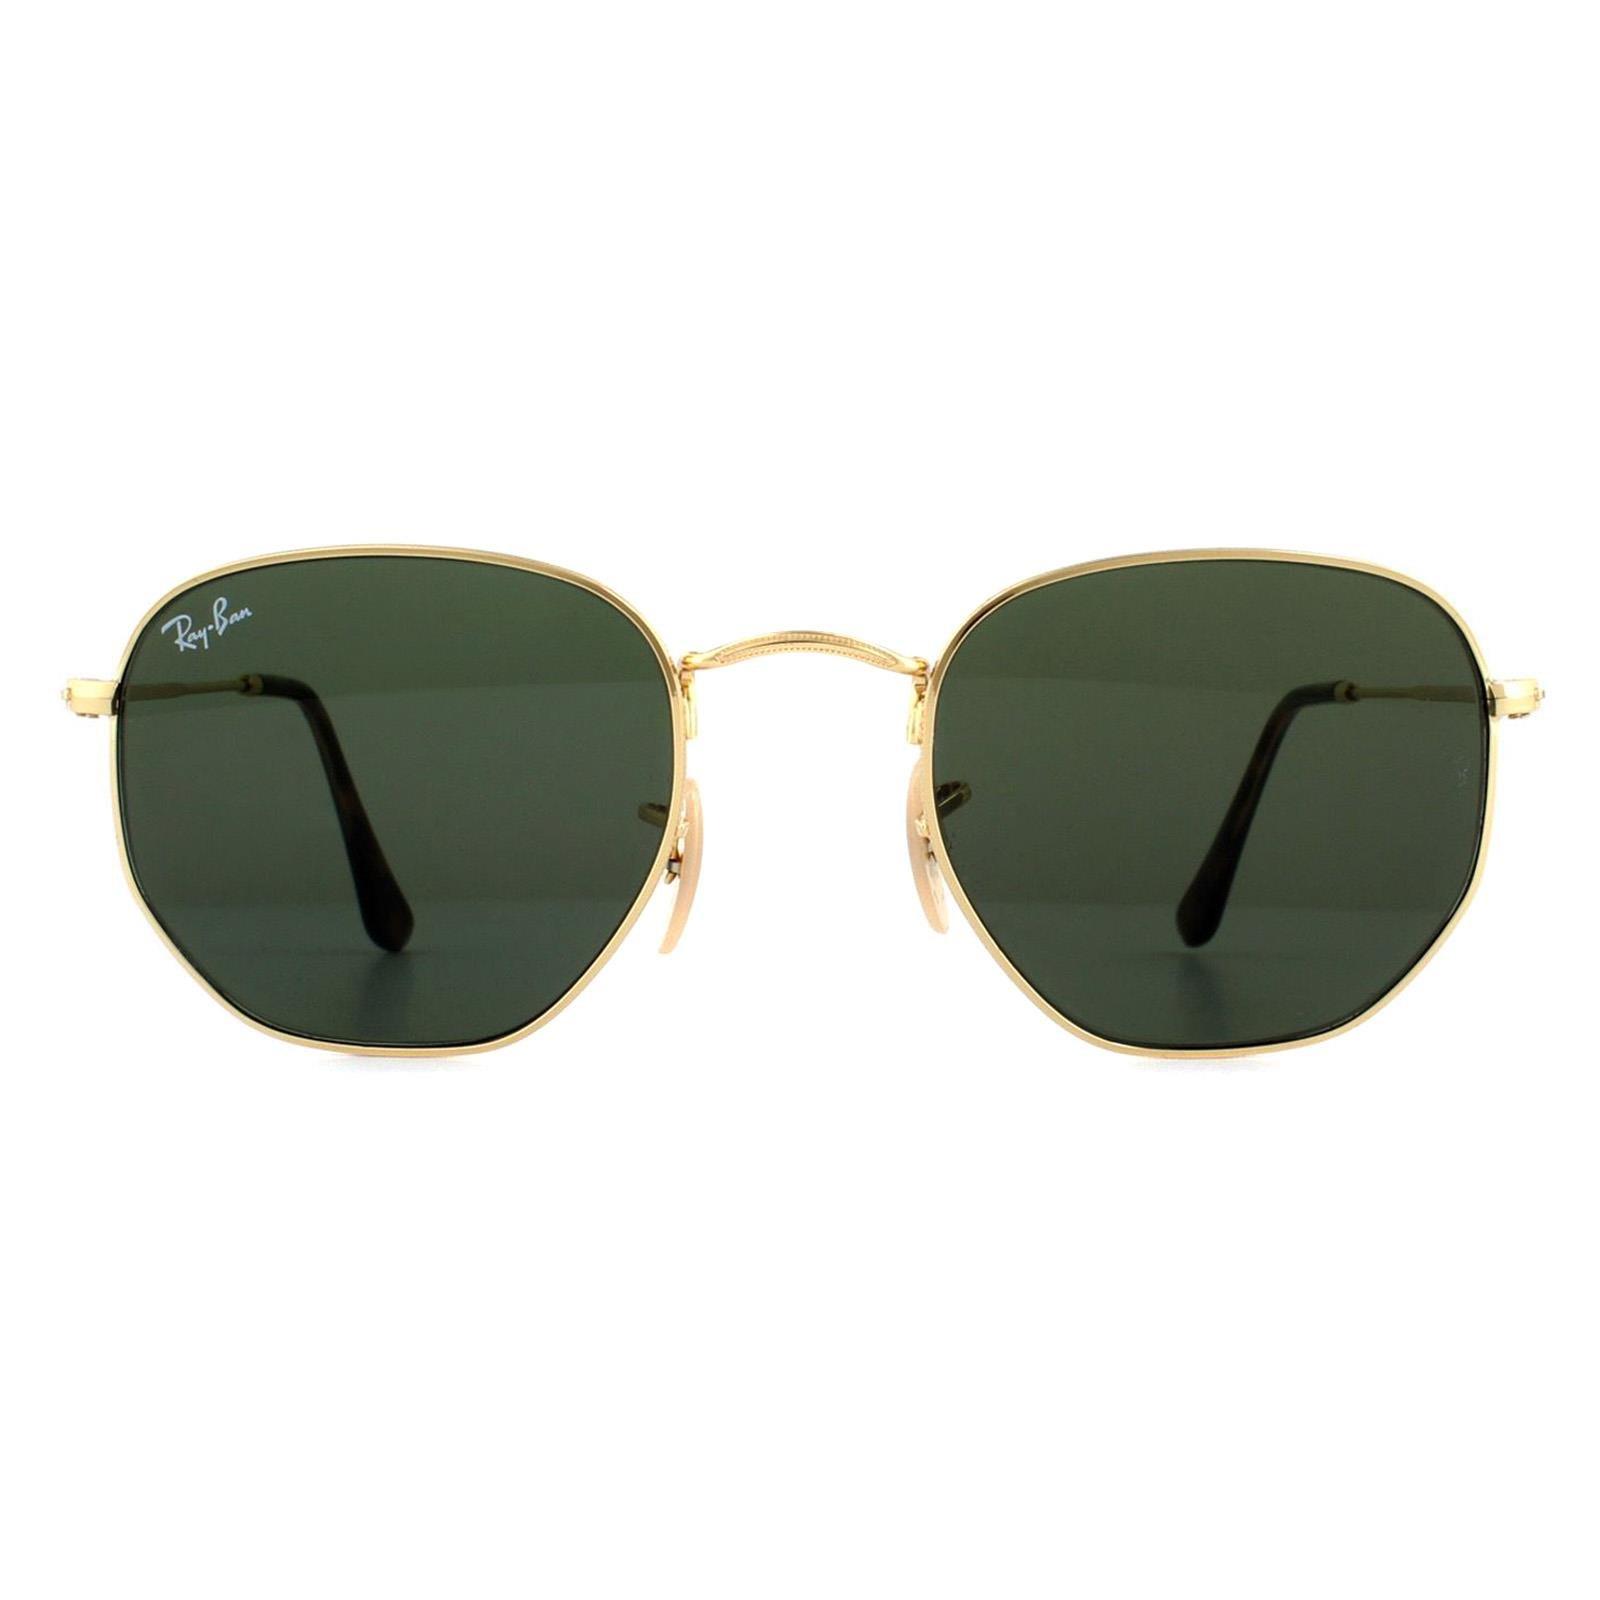 Квадратные золотисто-зеленые солнцезащитные очки G-15 Ray-Ban, золото